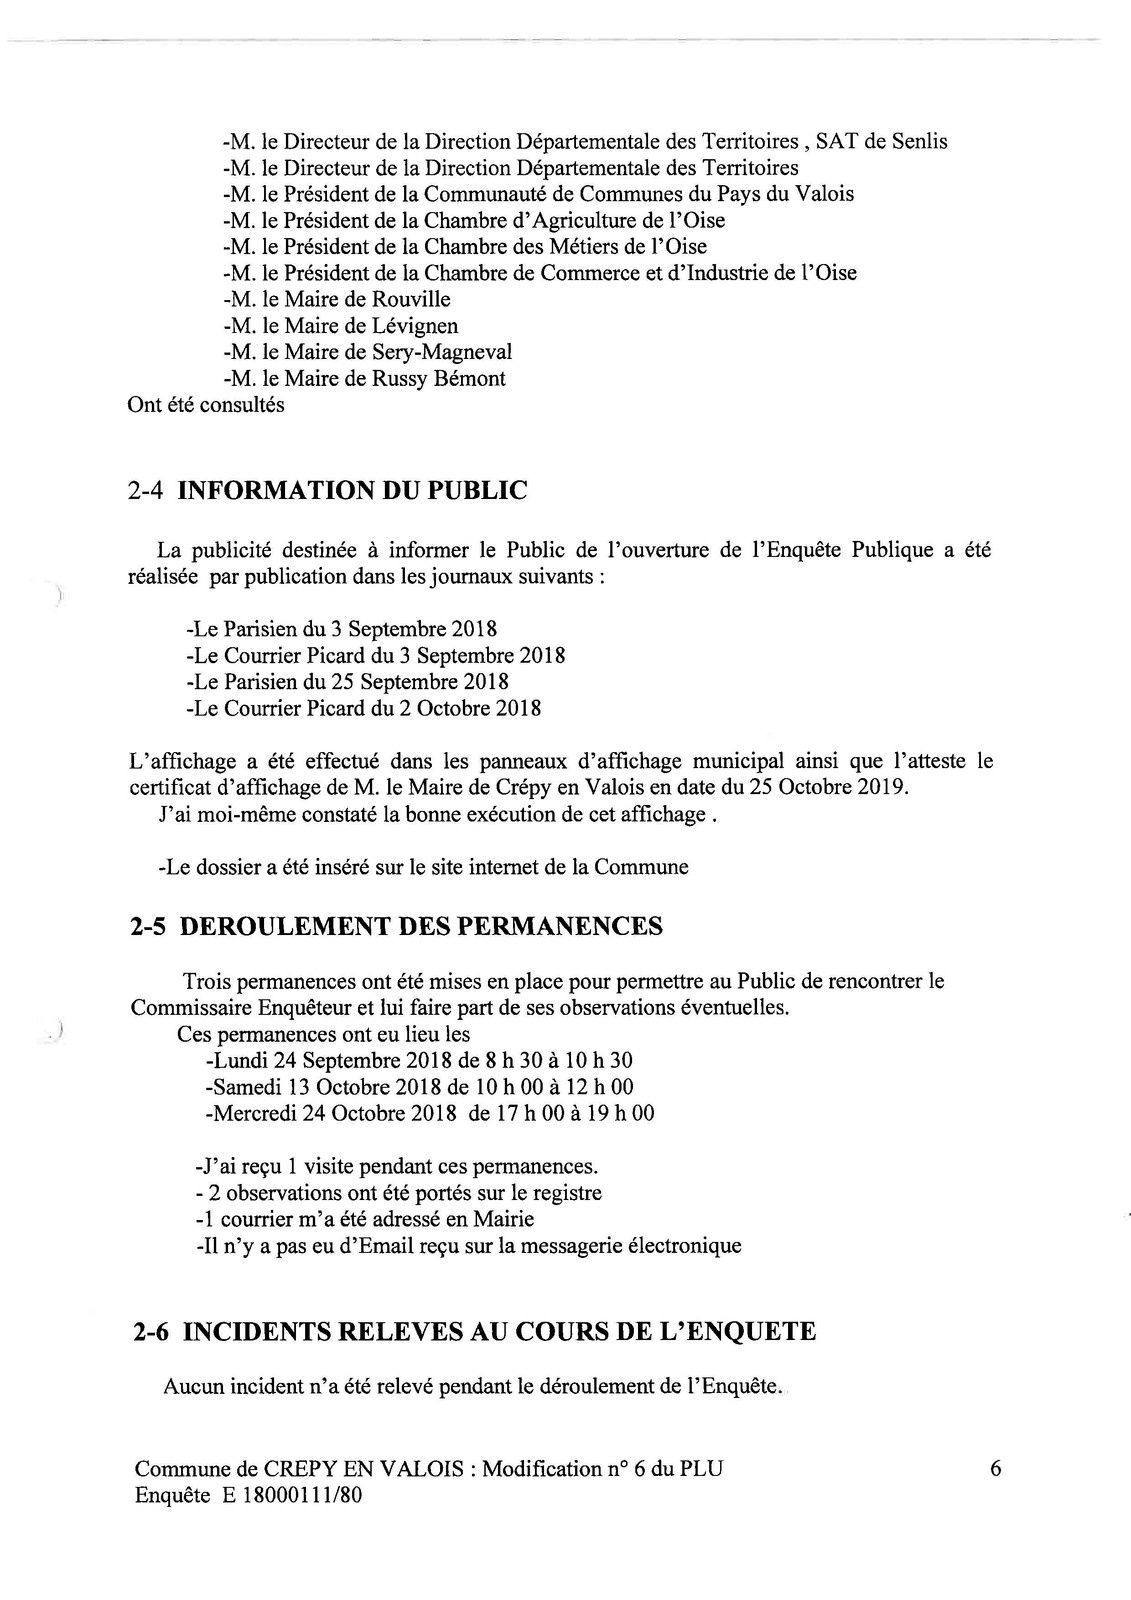 Communauté de communes du pays de Valois : Modificatif n°6 du Plan Local d’Urbanisme de Crépy en Valois (PLU)